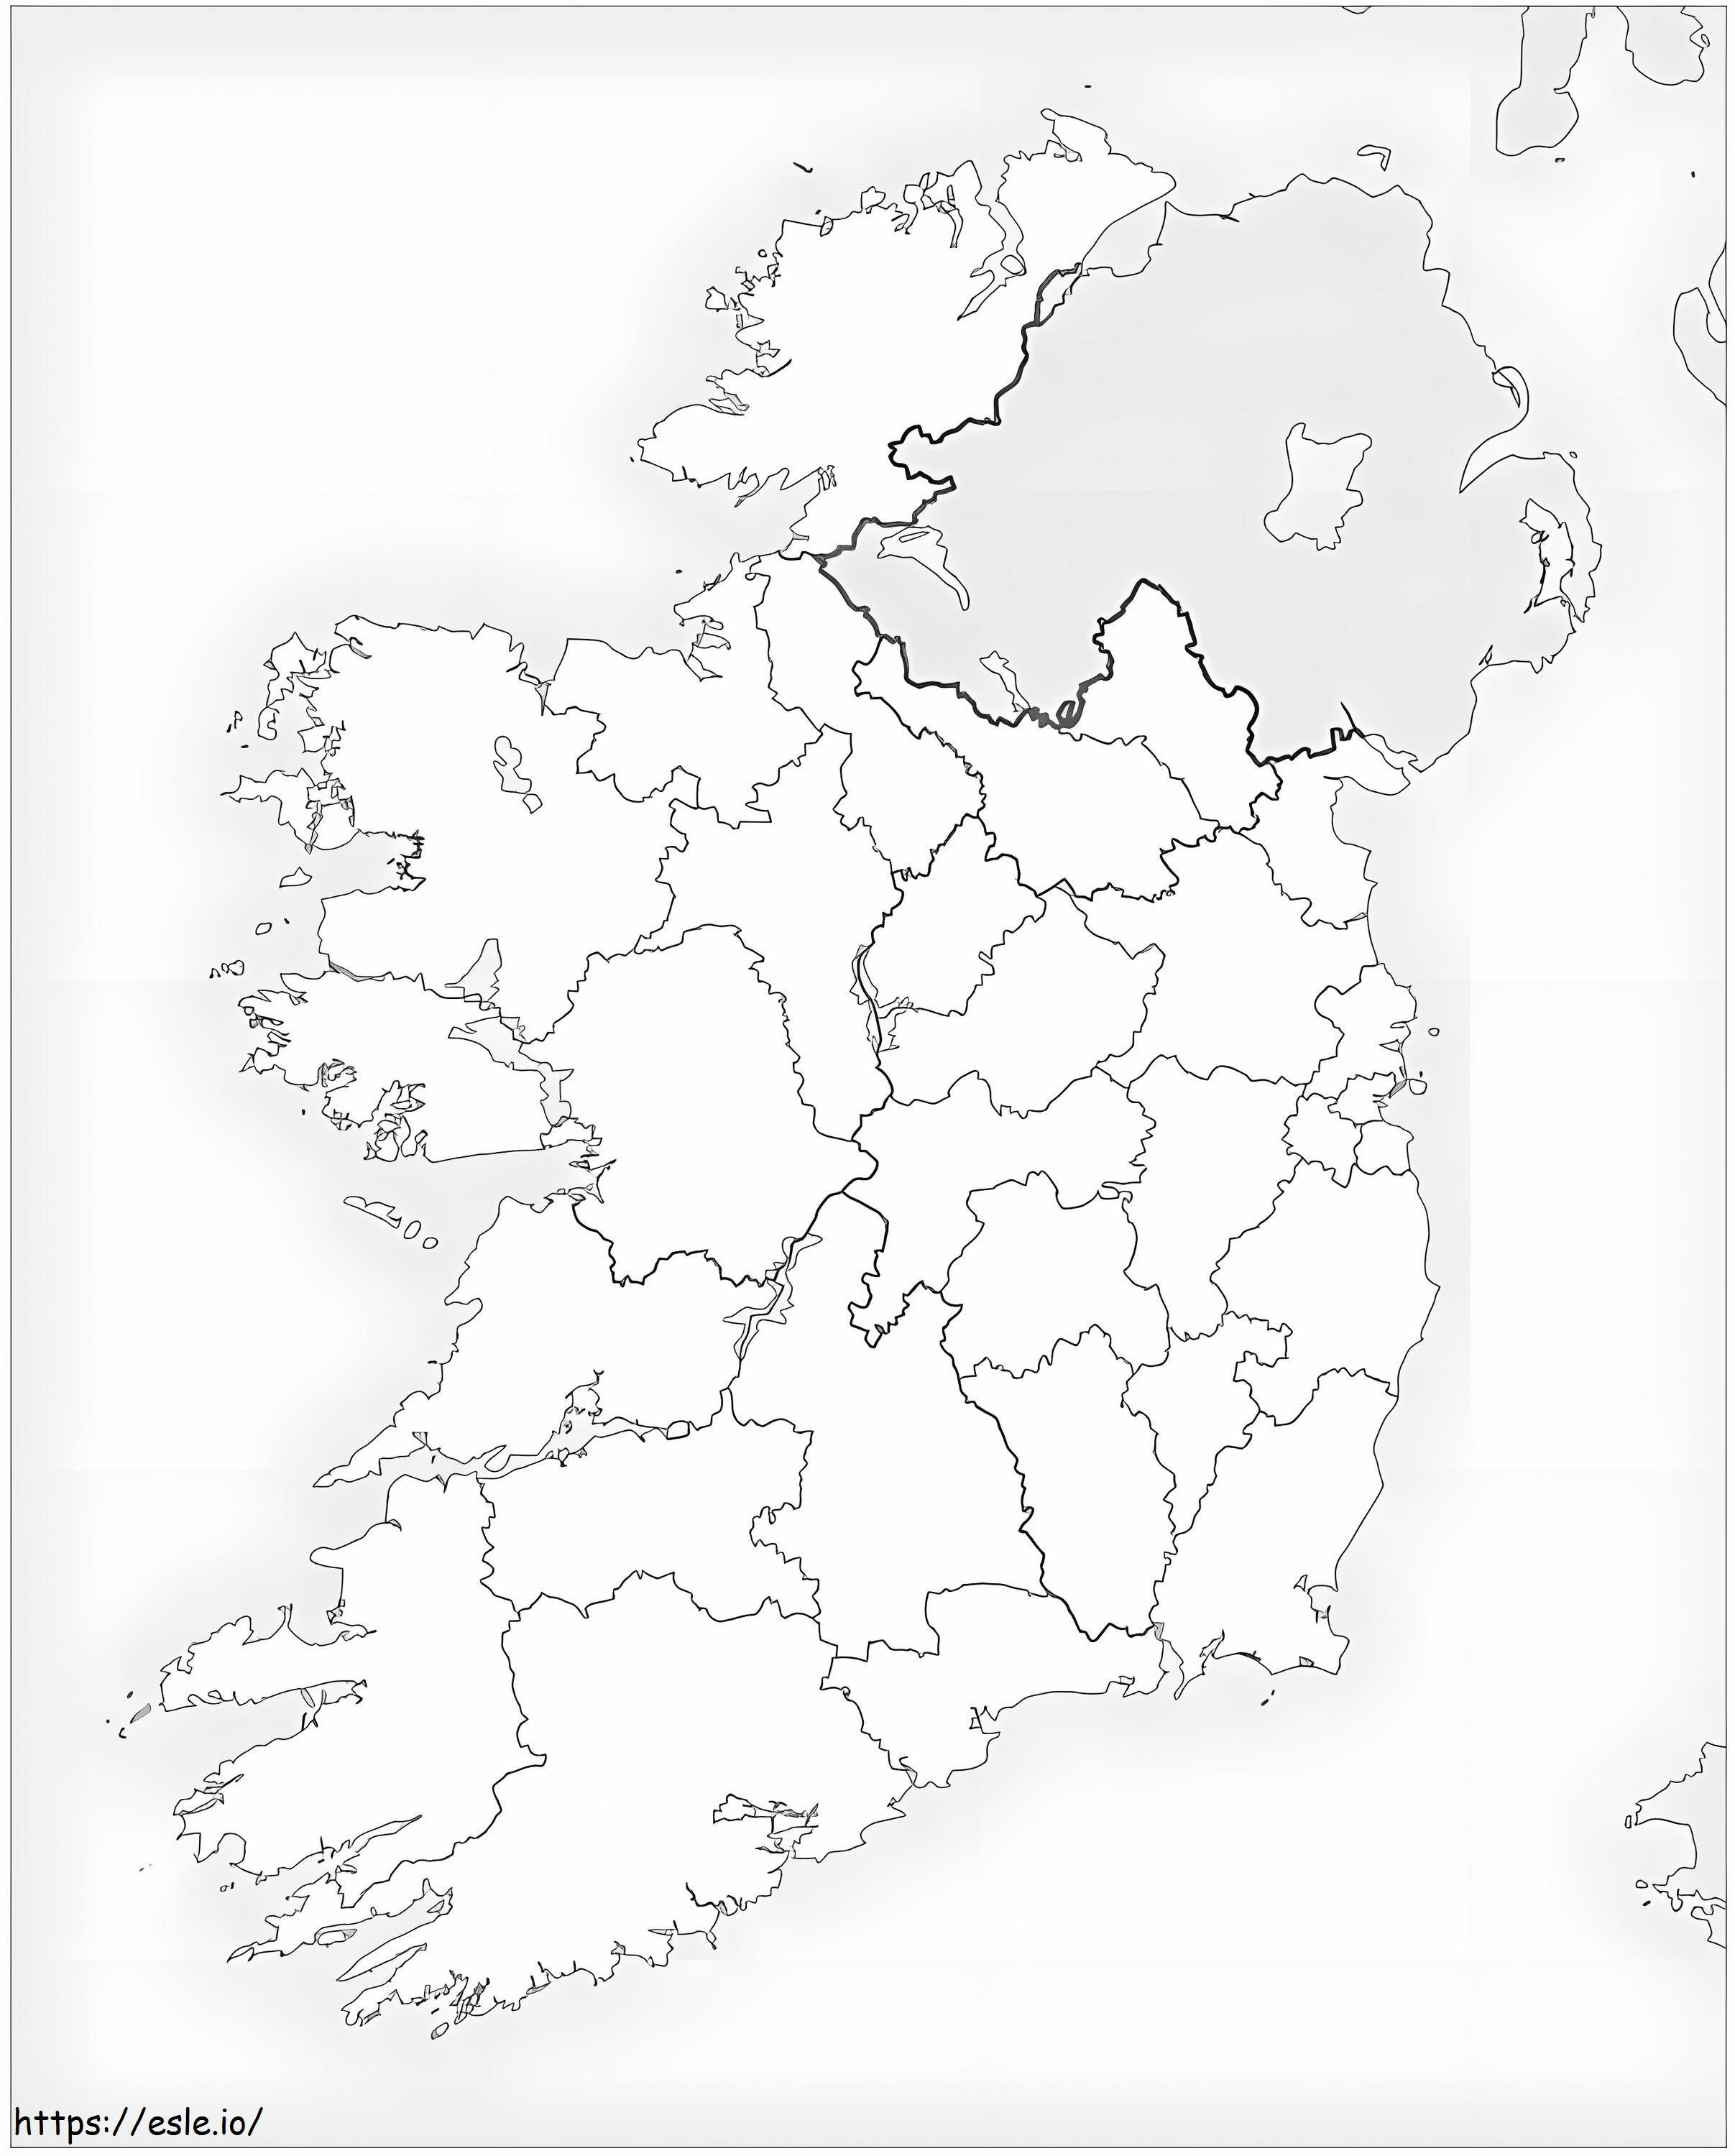 Karte von Irland 2 ausmalbilder